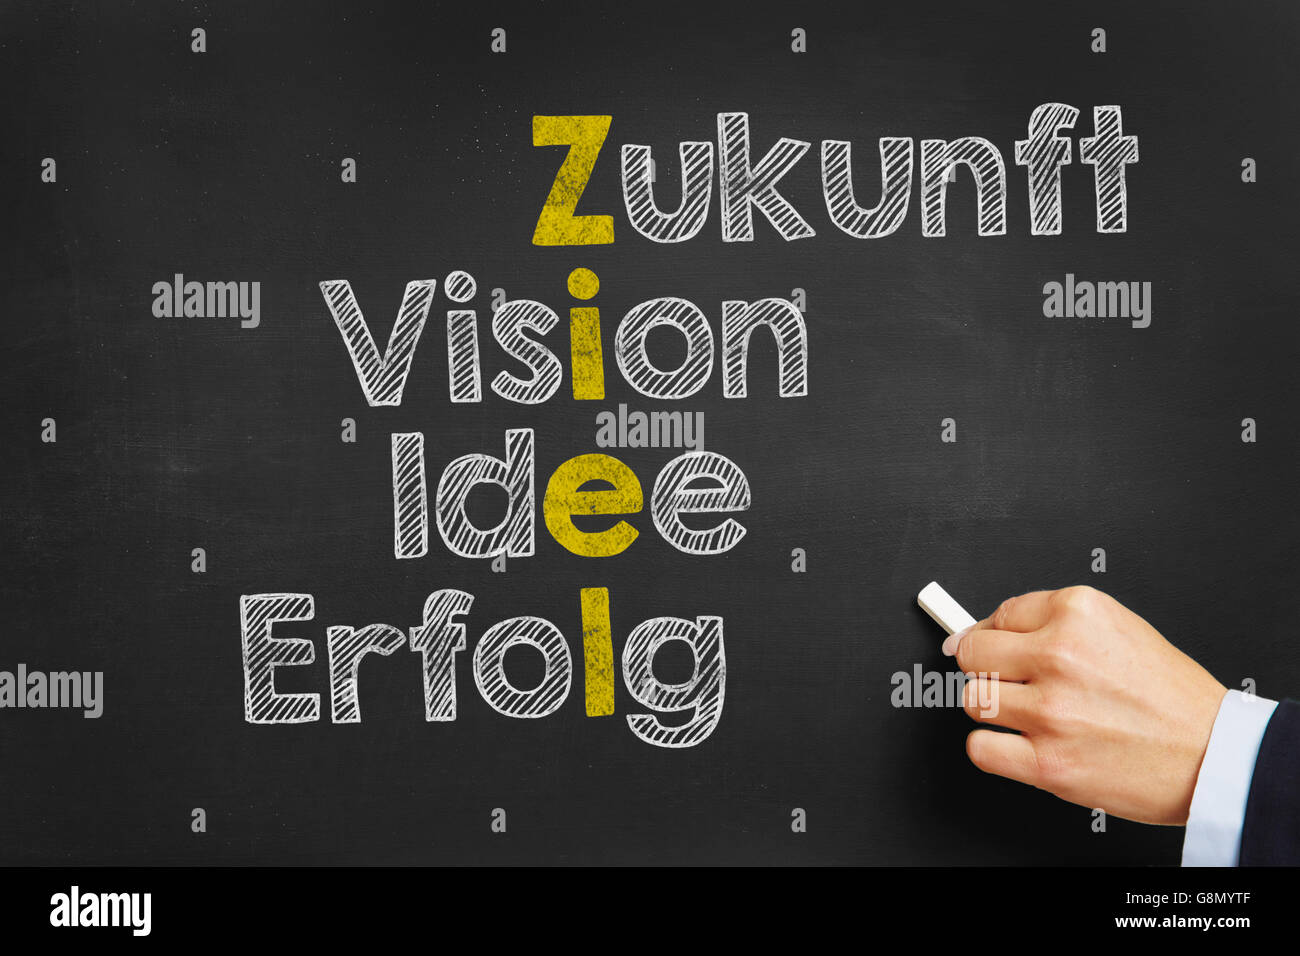 La scrittura a mano concetto in tedesco con parole come "Ziel, Zukunft, visione, Erfolg, Idee" (obiettivo, futuro, visione, idea, successo) per g Foto Stock